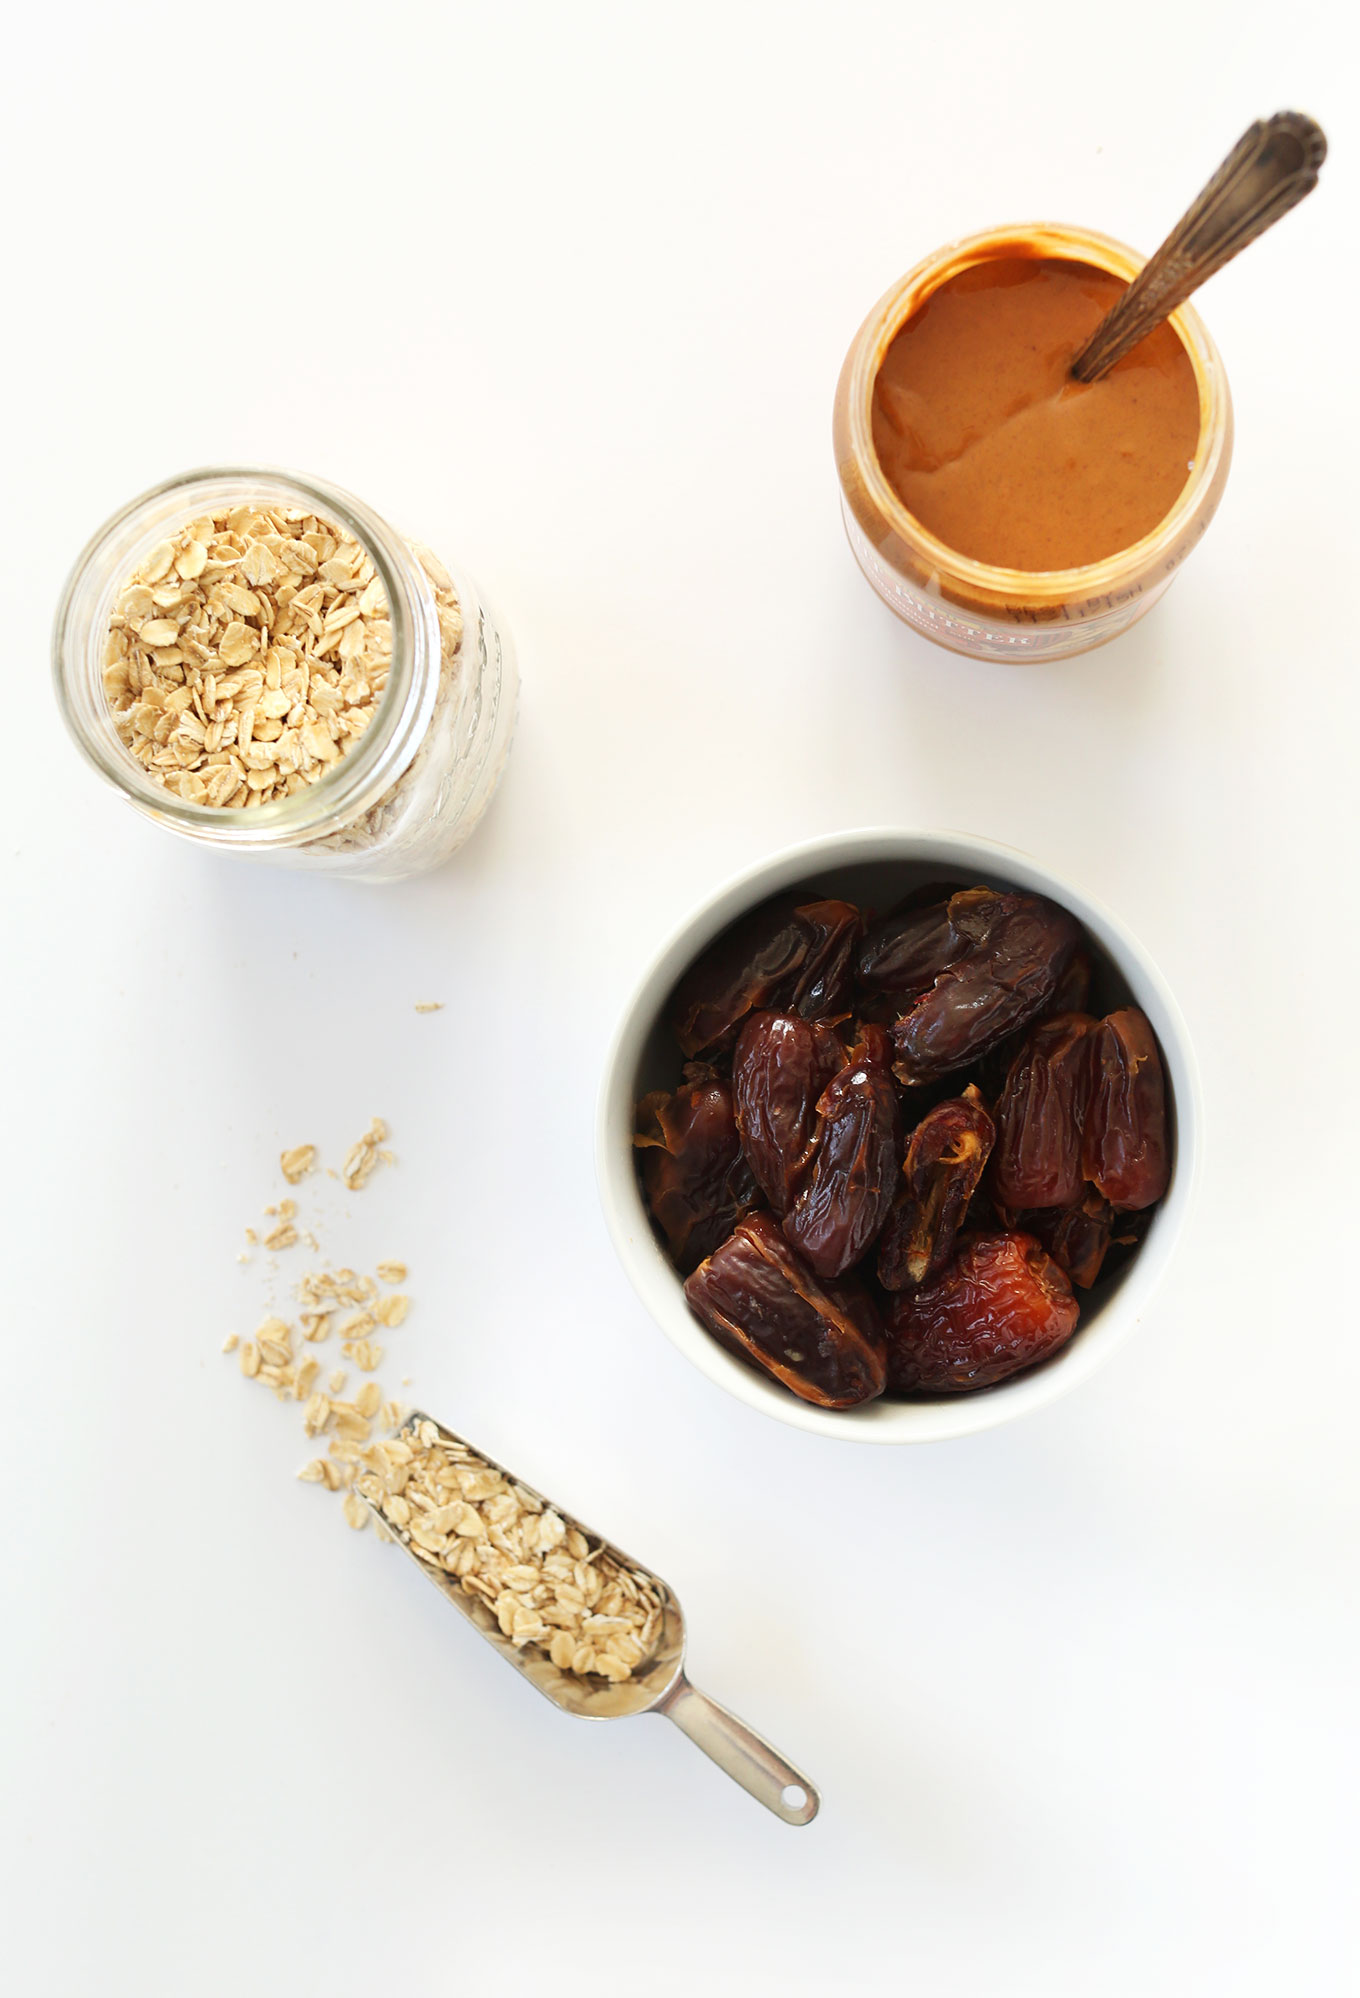 Ingredients for making our homemade gluten-free vegan Peanut Butter Larabars